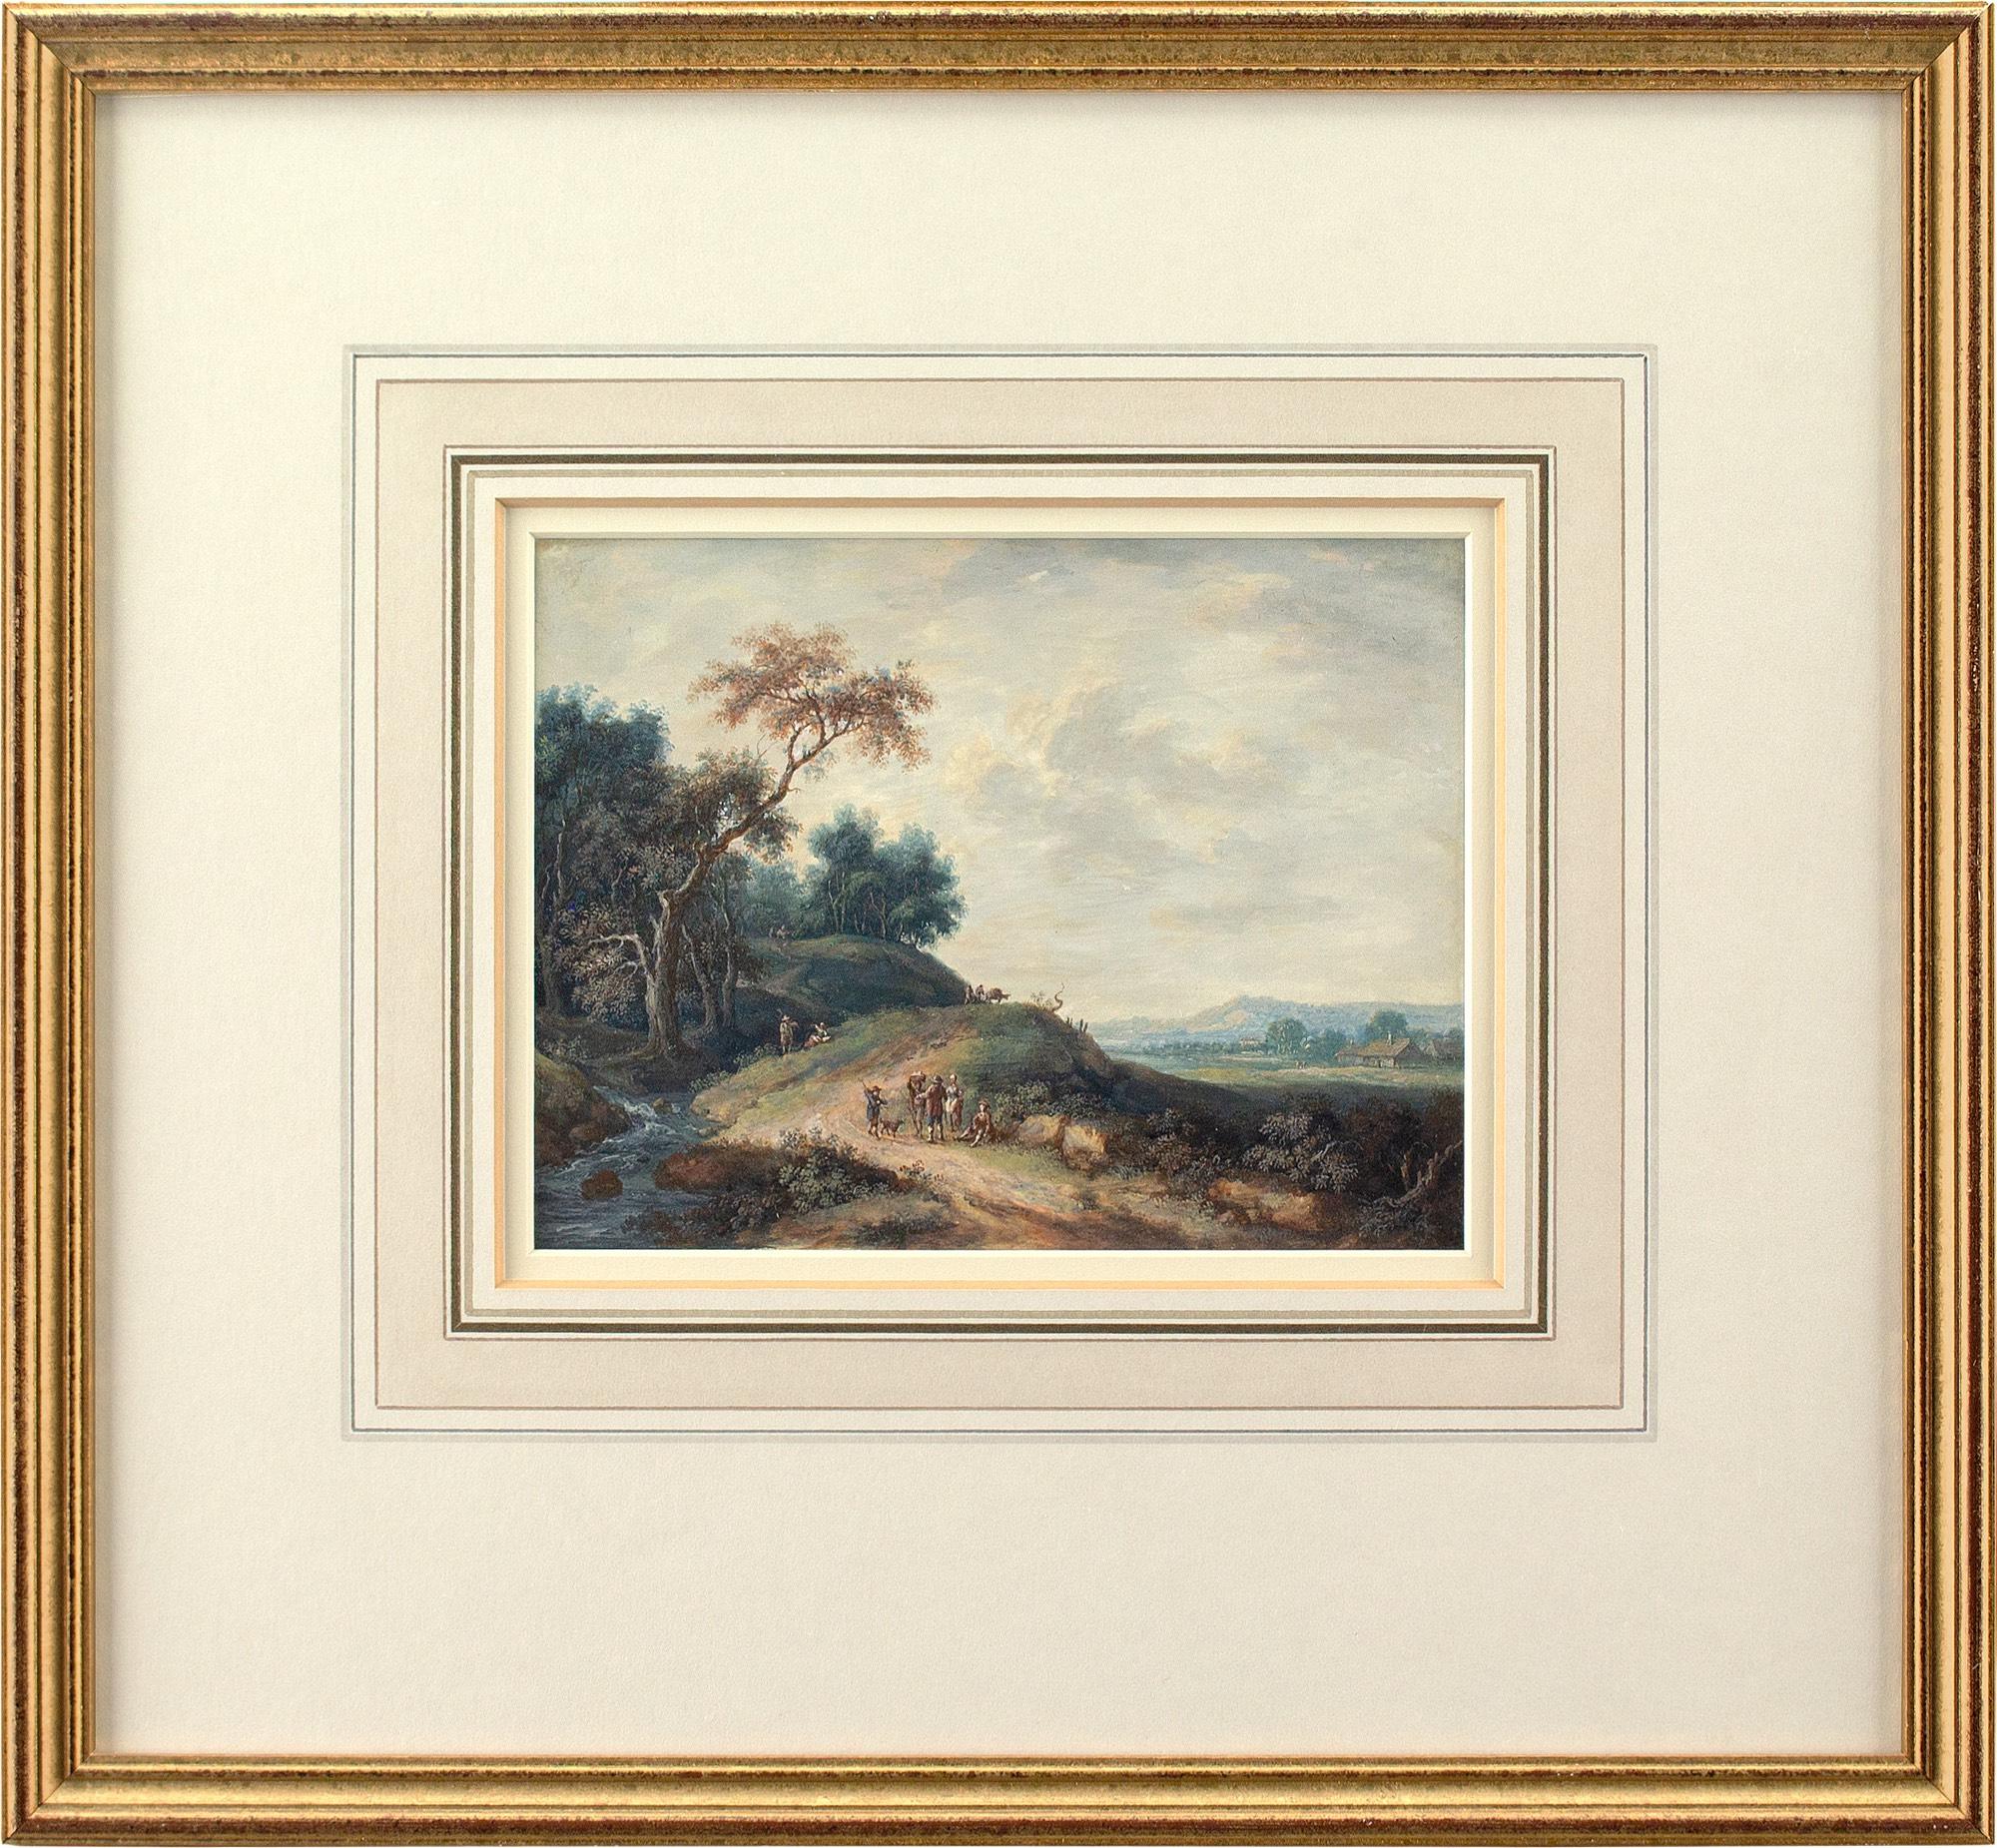 Cette gouache de la fin du XVIIIe siècle de l'artiste britannique John-Richard RA (1731-1810) représente un paysage pittoresque avec un chemin, des personnages et des chalets éloignés.

Plongé dans l'effervescence de la scène théâtrale londonienne